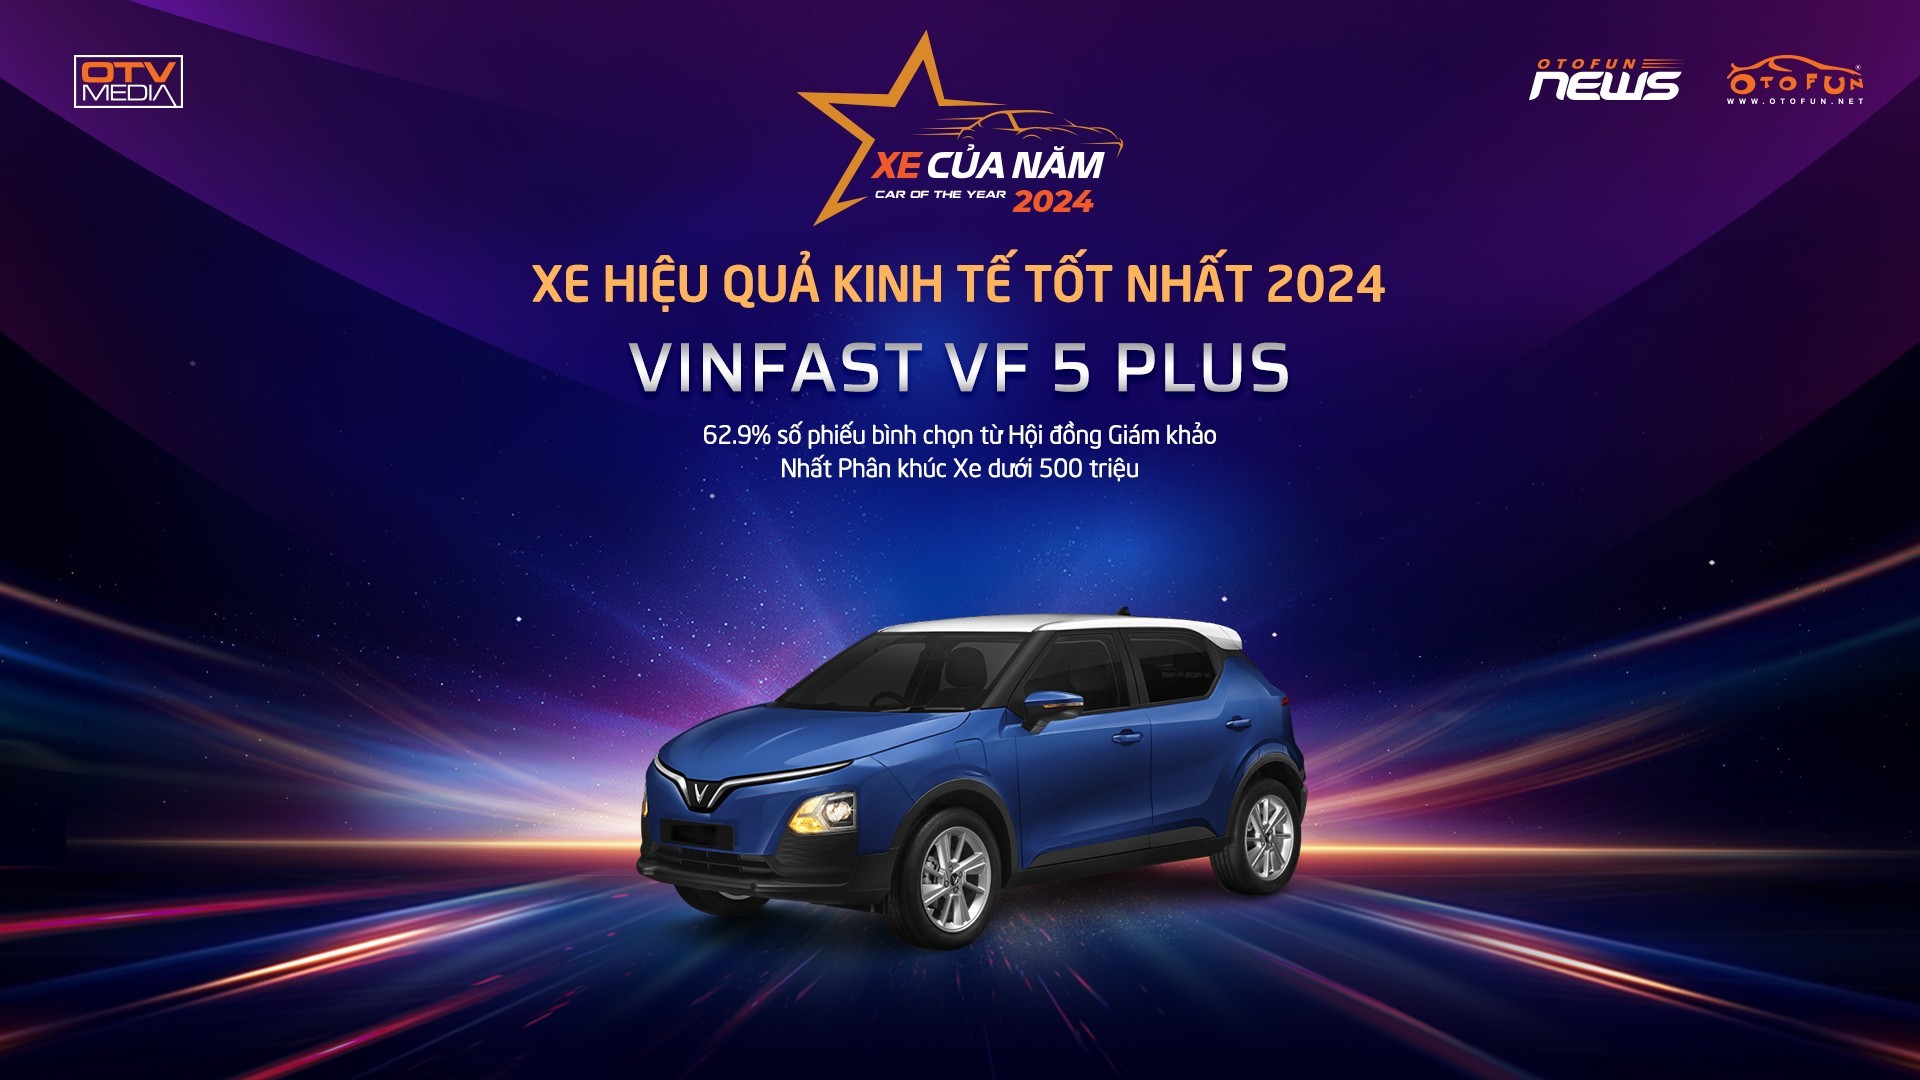 VinFast VF 5 Plus - chiếc xe giành danh hiệu XE HIỆU QUẢ KINH TẾ TỐT NHẤT 2024